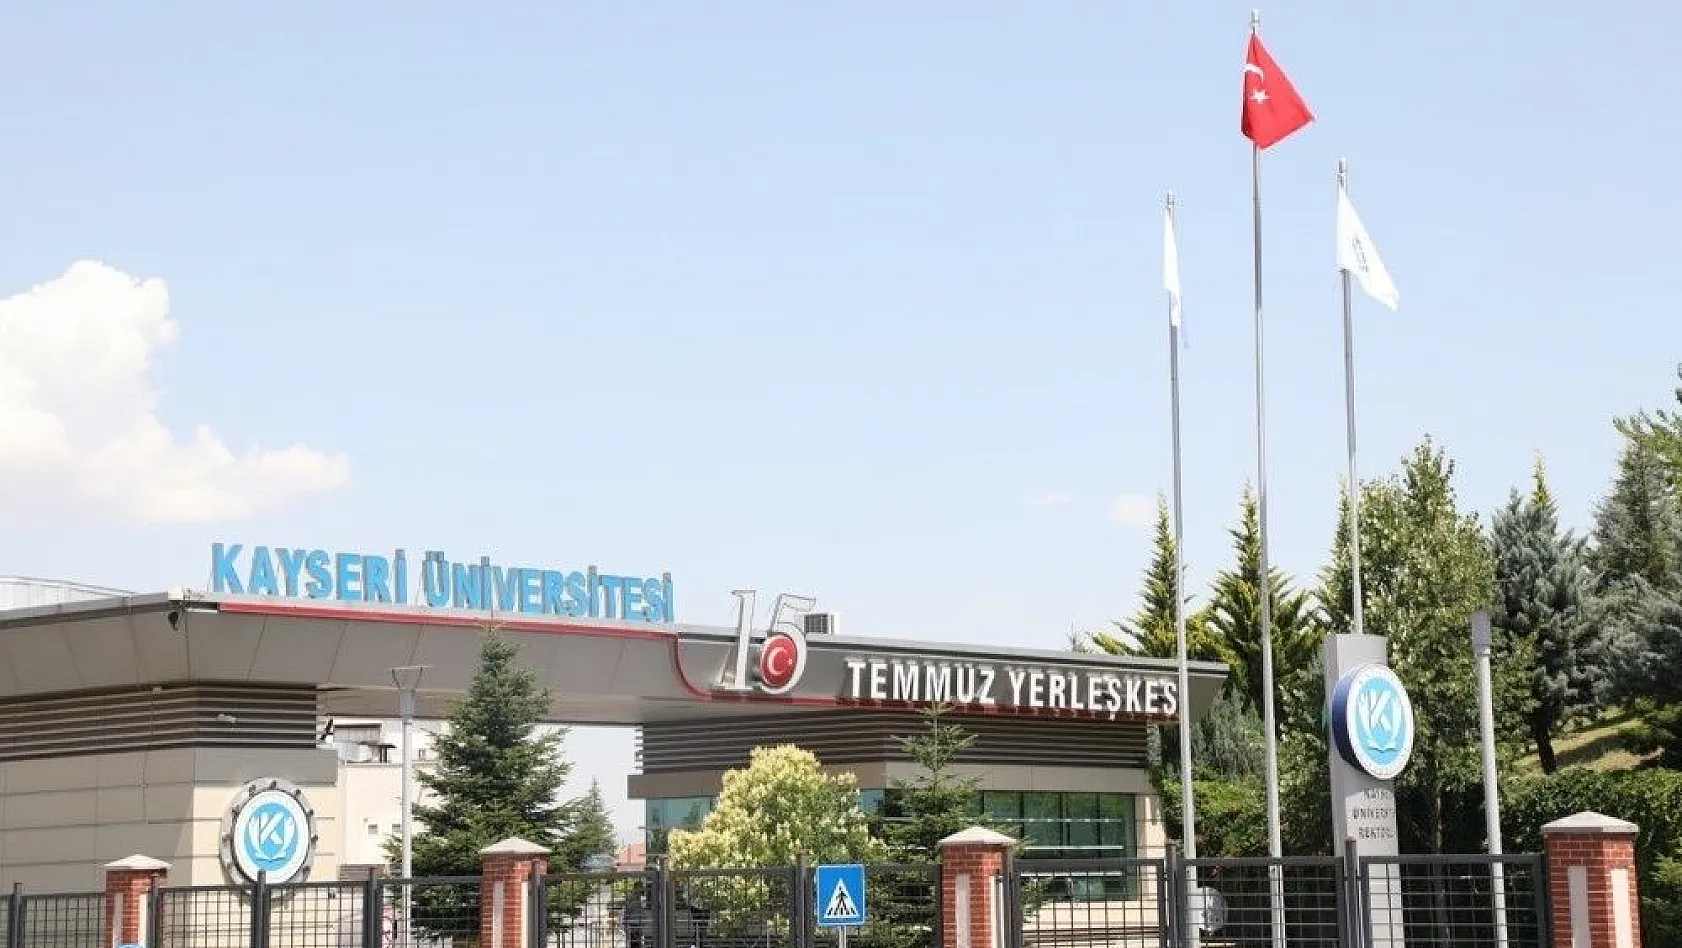 Kayseri Üniversitesi, YKS Tercihlerinde Yüzde 100 Doluluk Bekliyor